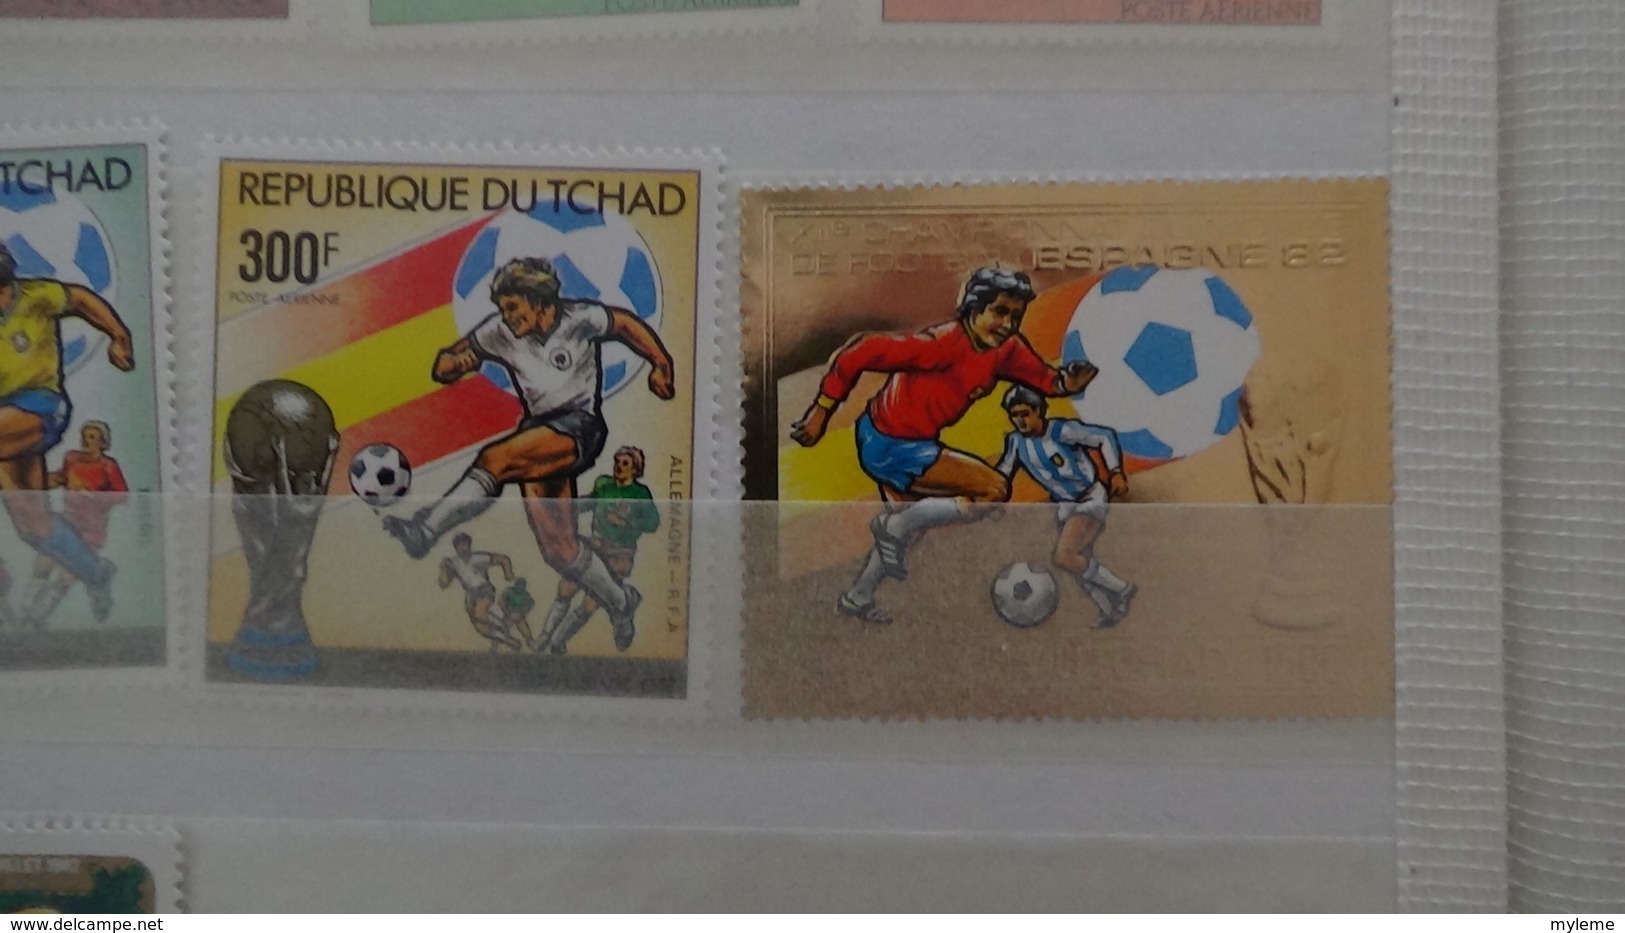 C92 Très belle collection timbres et blocs ** du Tchad et du Togo dont bonnes petites valeurs !!!